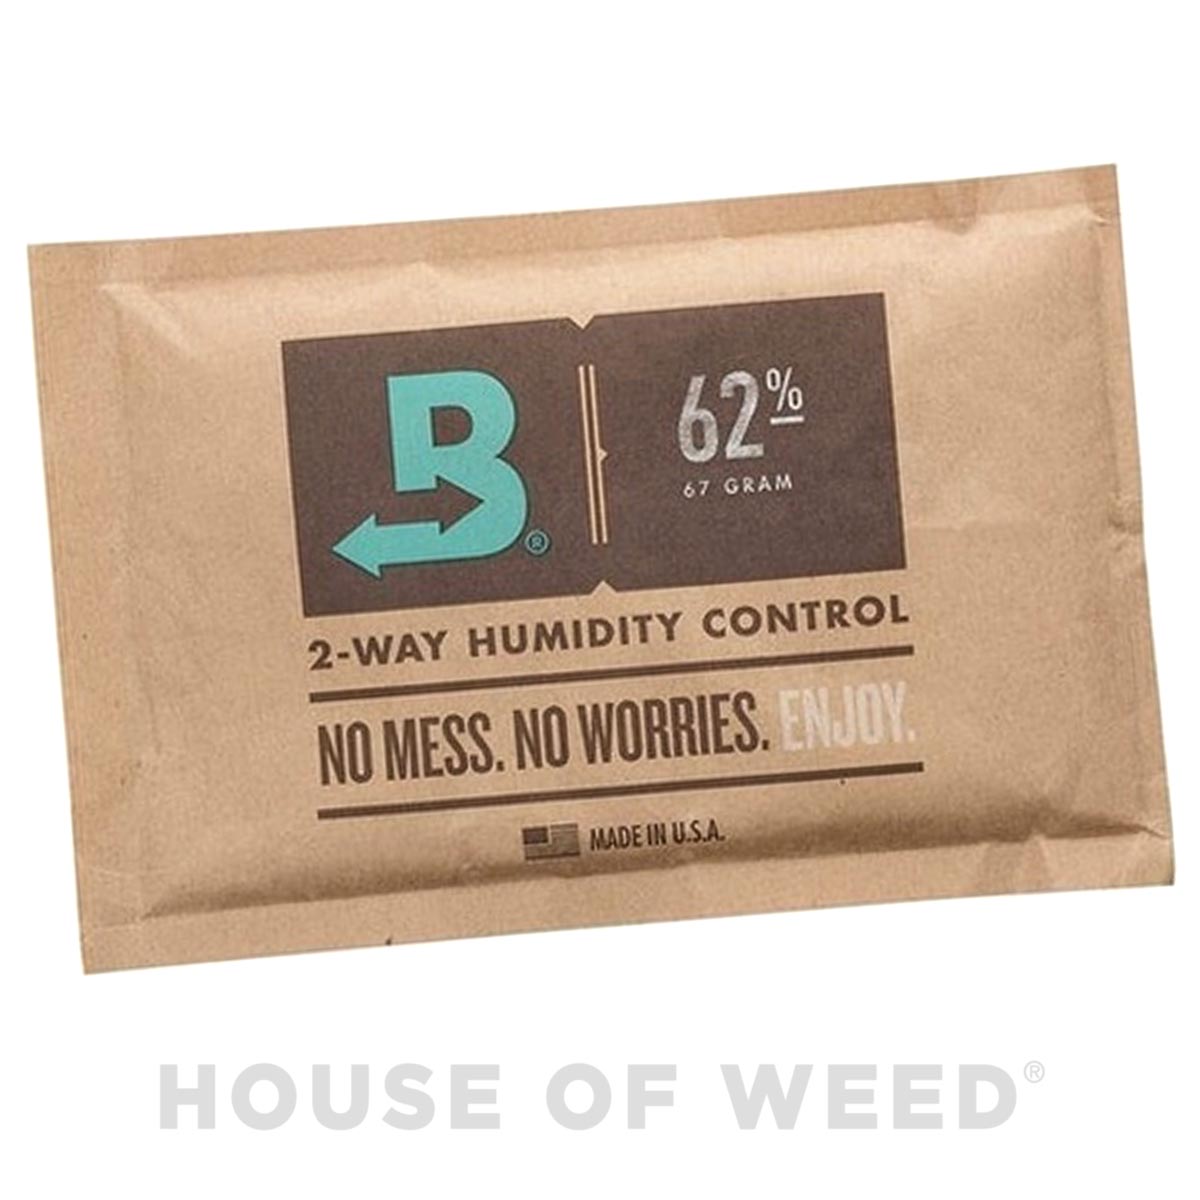 sobre de humedad para el curado de marihuana bóveda 67g 62% house of weed tienda online 